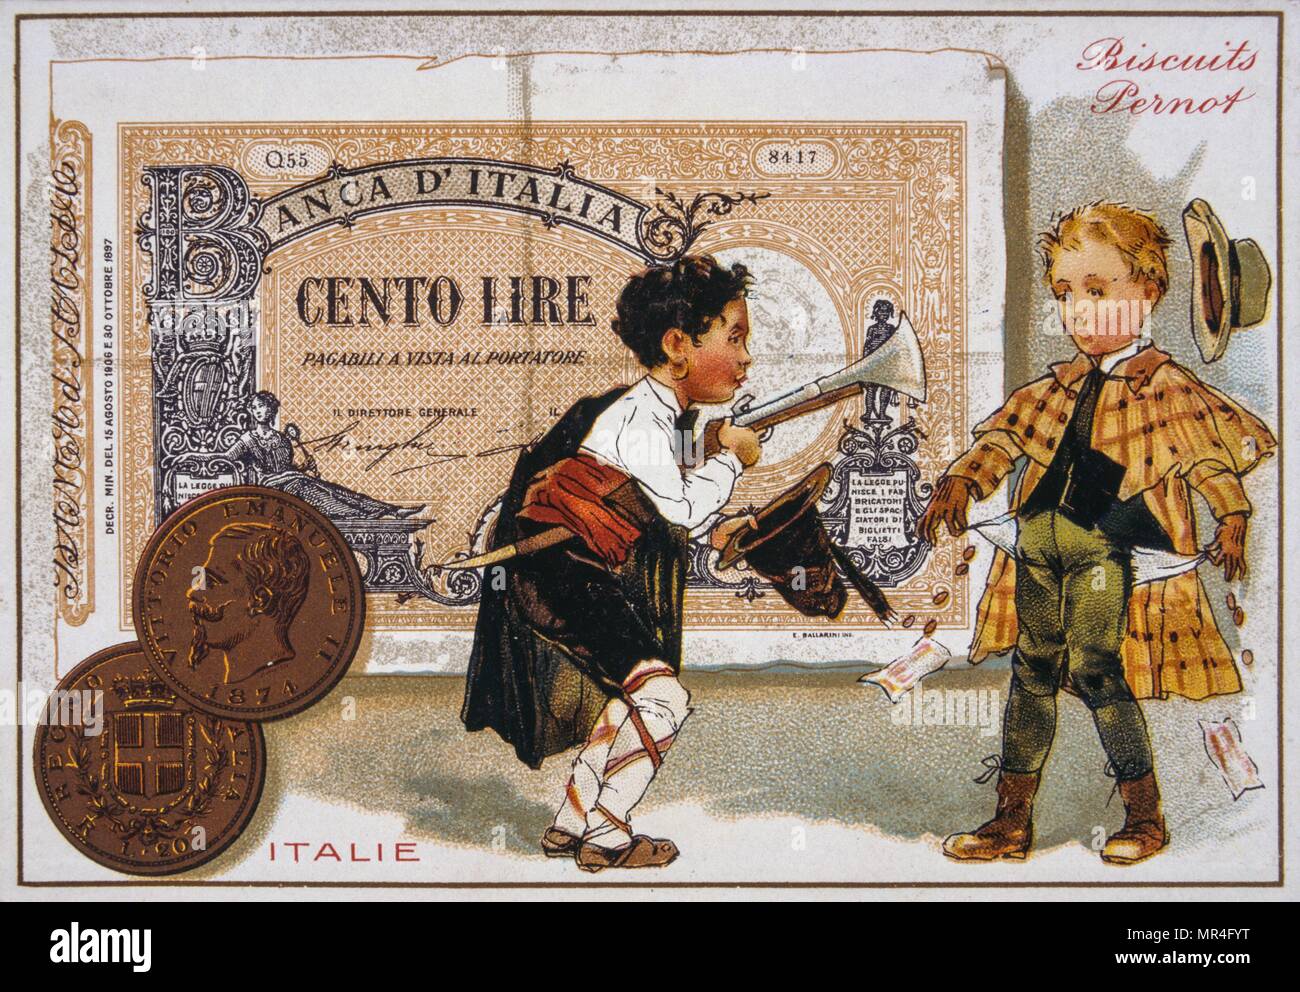 Cartolina francese del 1900 raffigurante due tradizionalmente condita ragazzi italiani contro un 100 Lira banconota Foto Stock